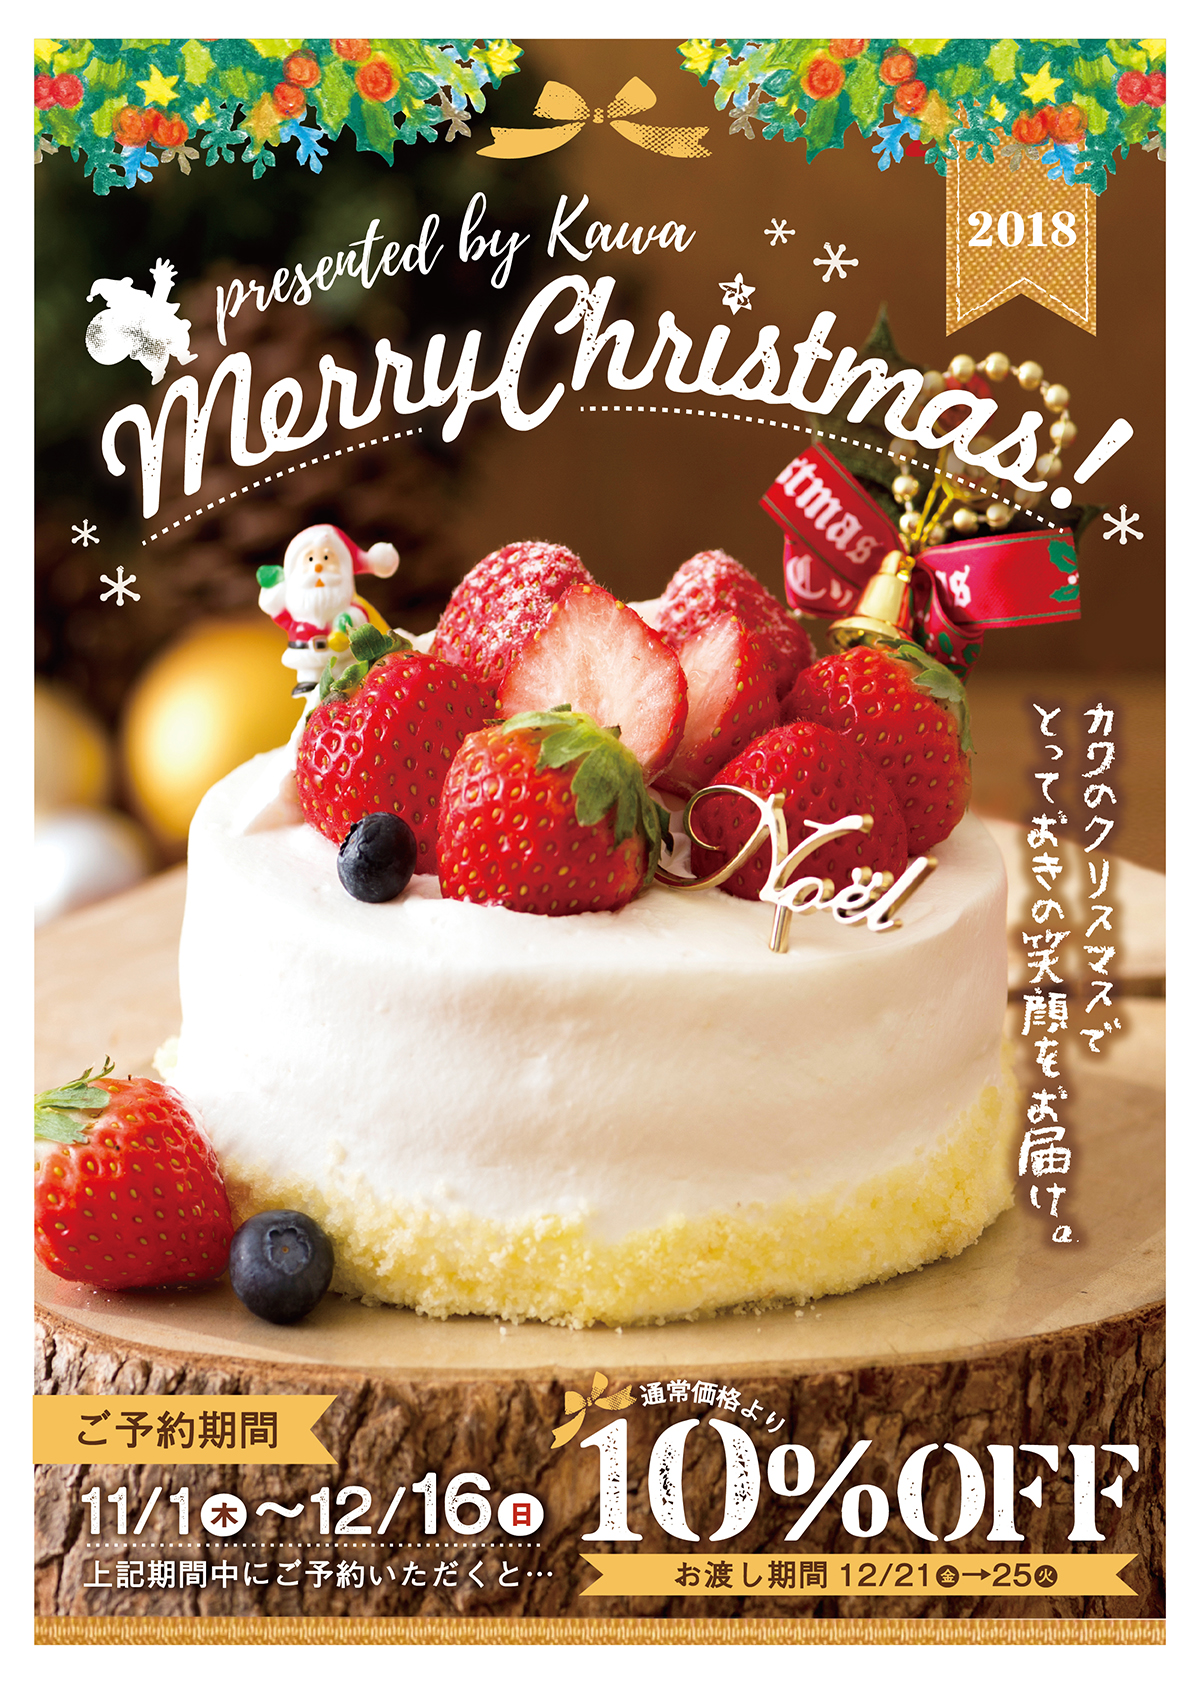 18 カワのクリスマスケーキは11 1 木 12 16 日 のご予約で通常価格より10 Off パン工房カワ